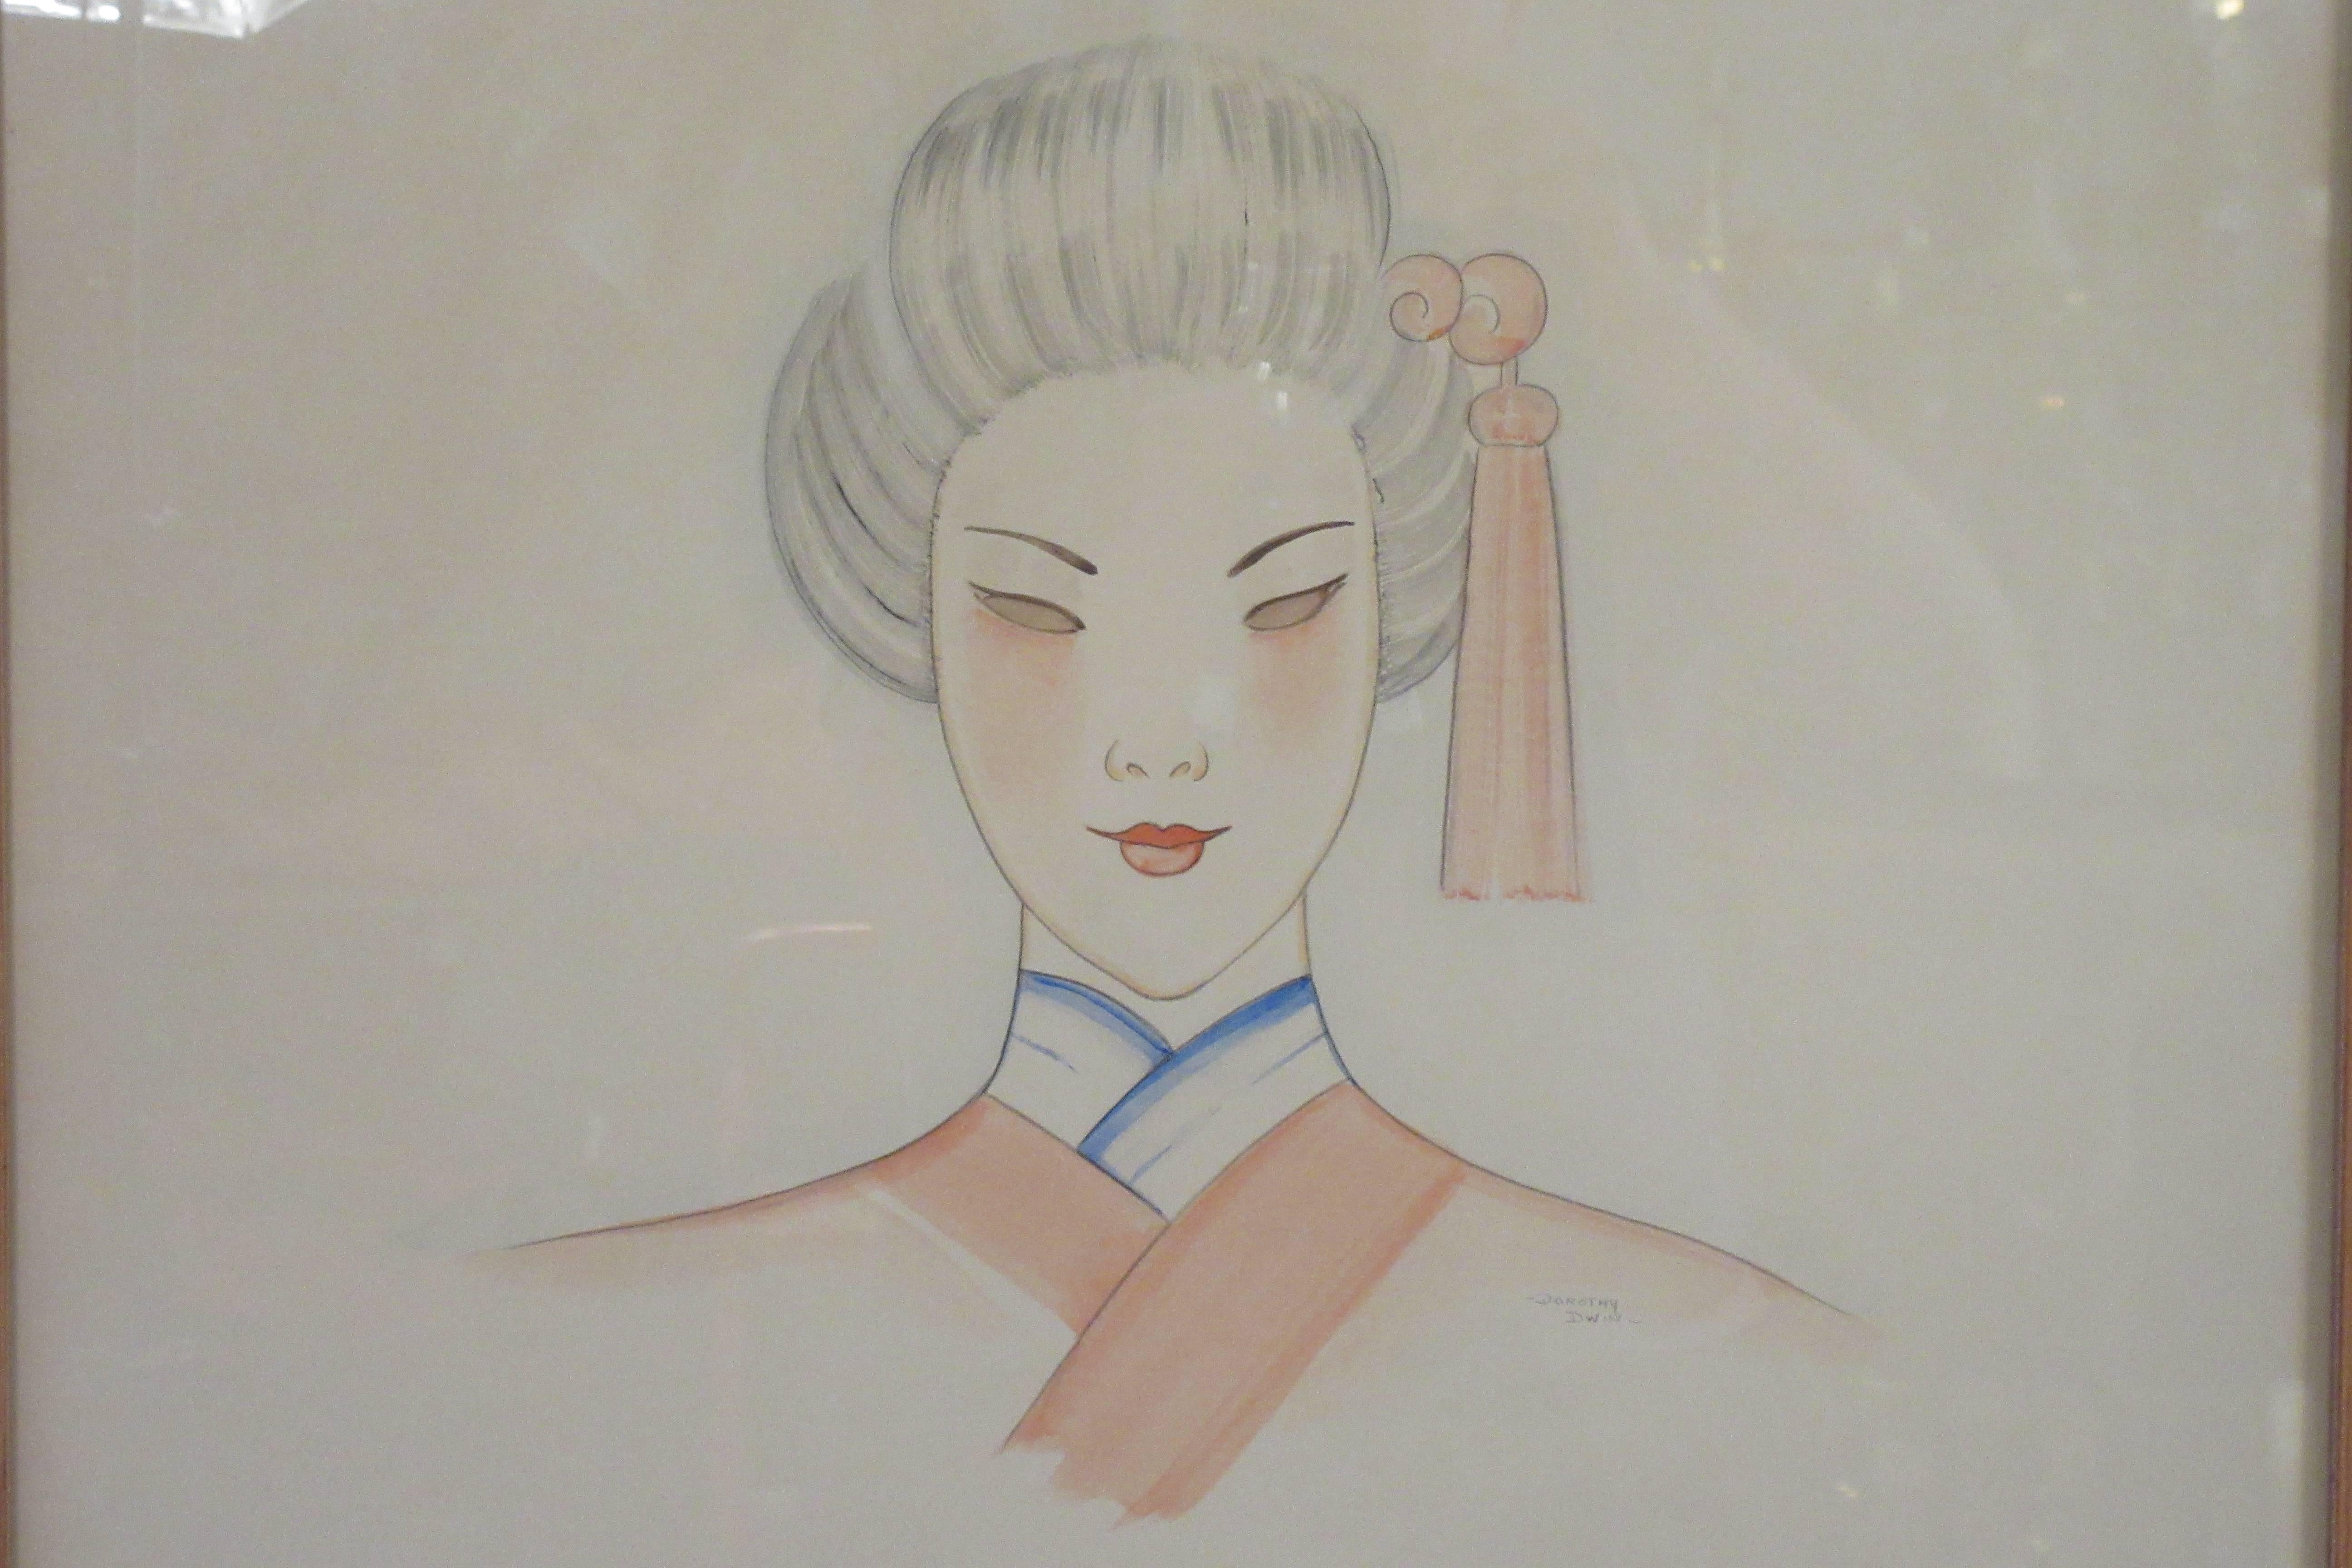 Peinture au pastel des années 1940 sur papier d'une femme asiatique signée Dorothy Dwin
Illustration
Cadre en bois et verre
Couleurs : rose, bleu, blanc